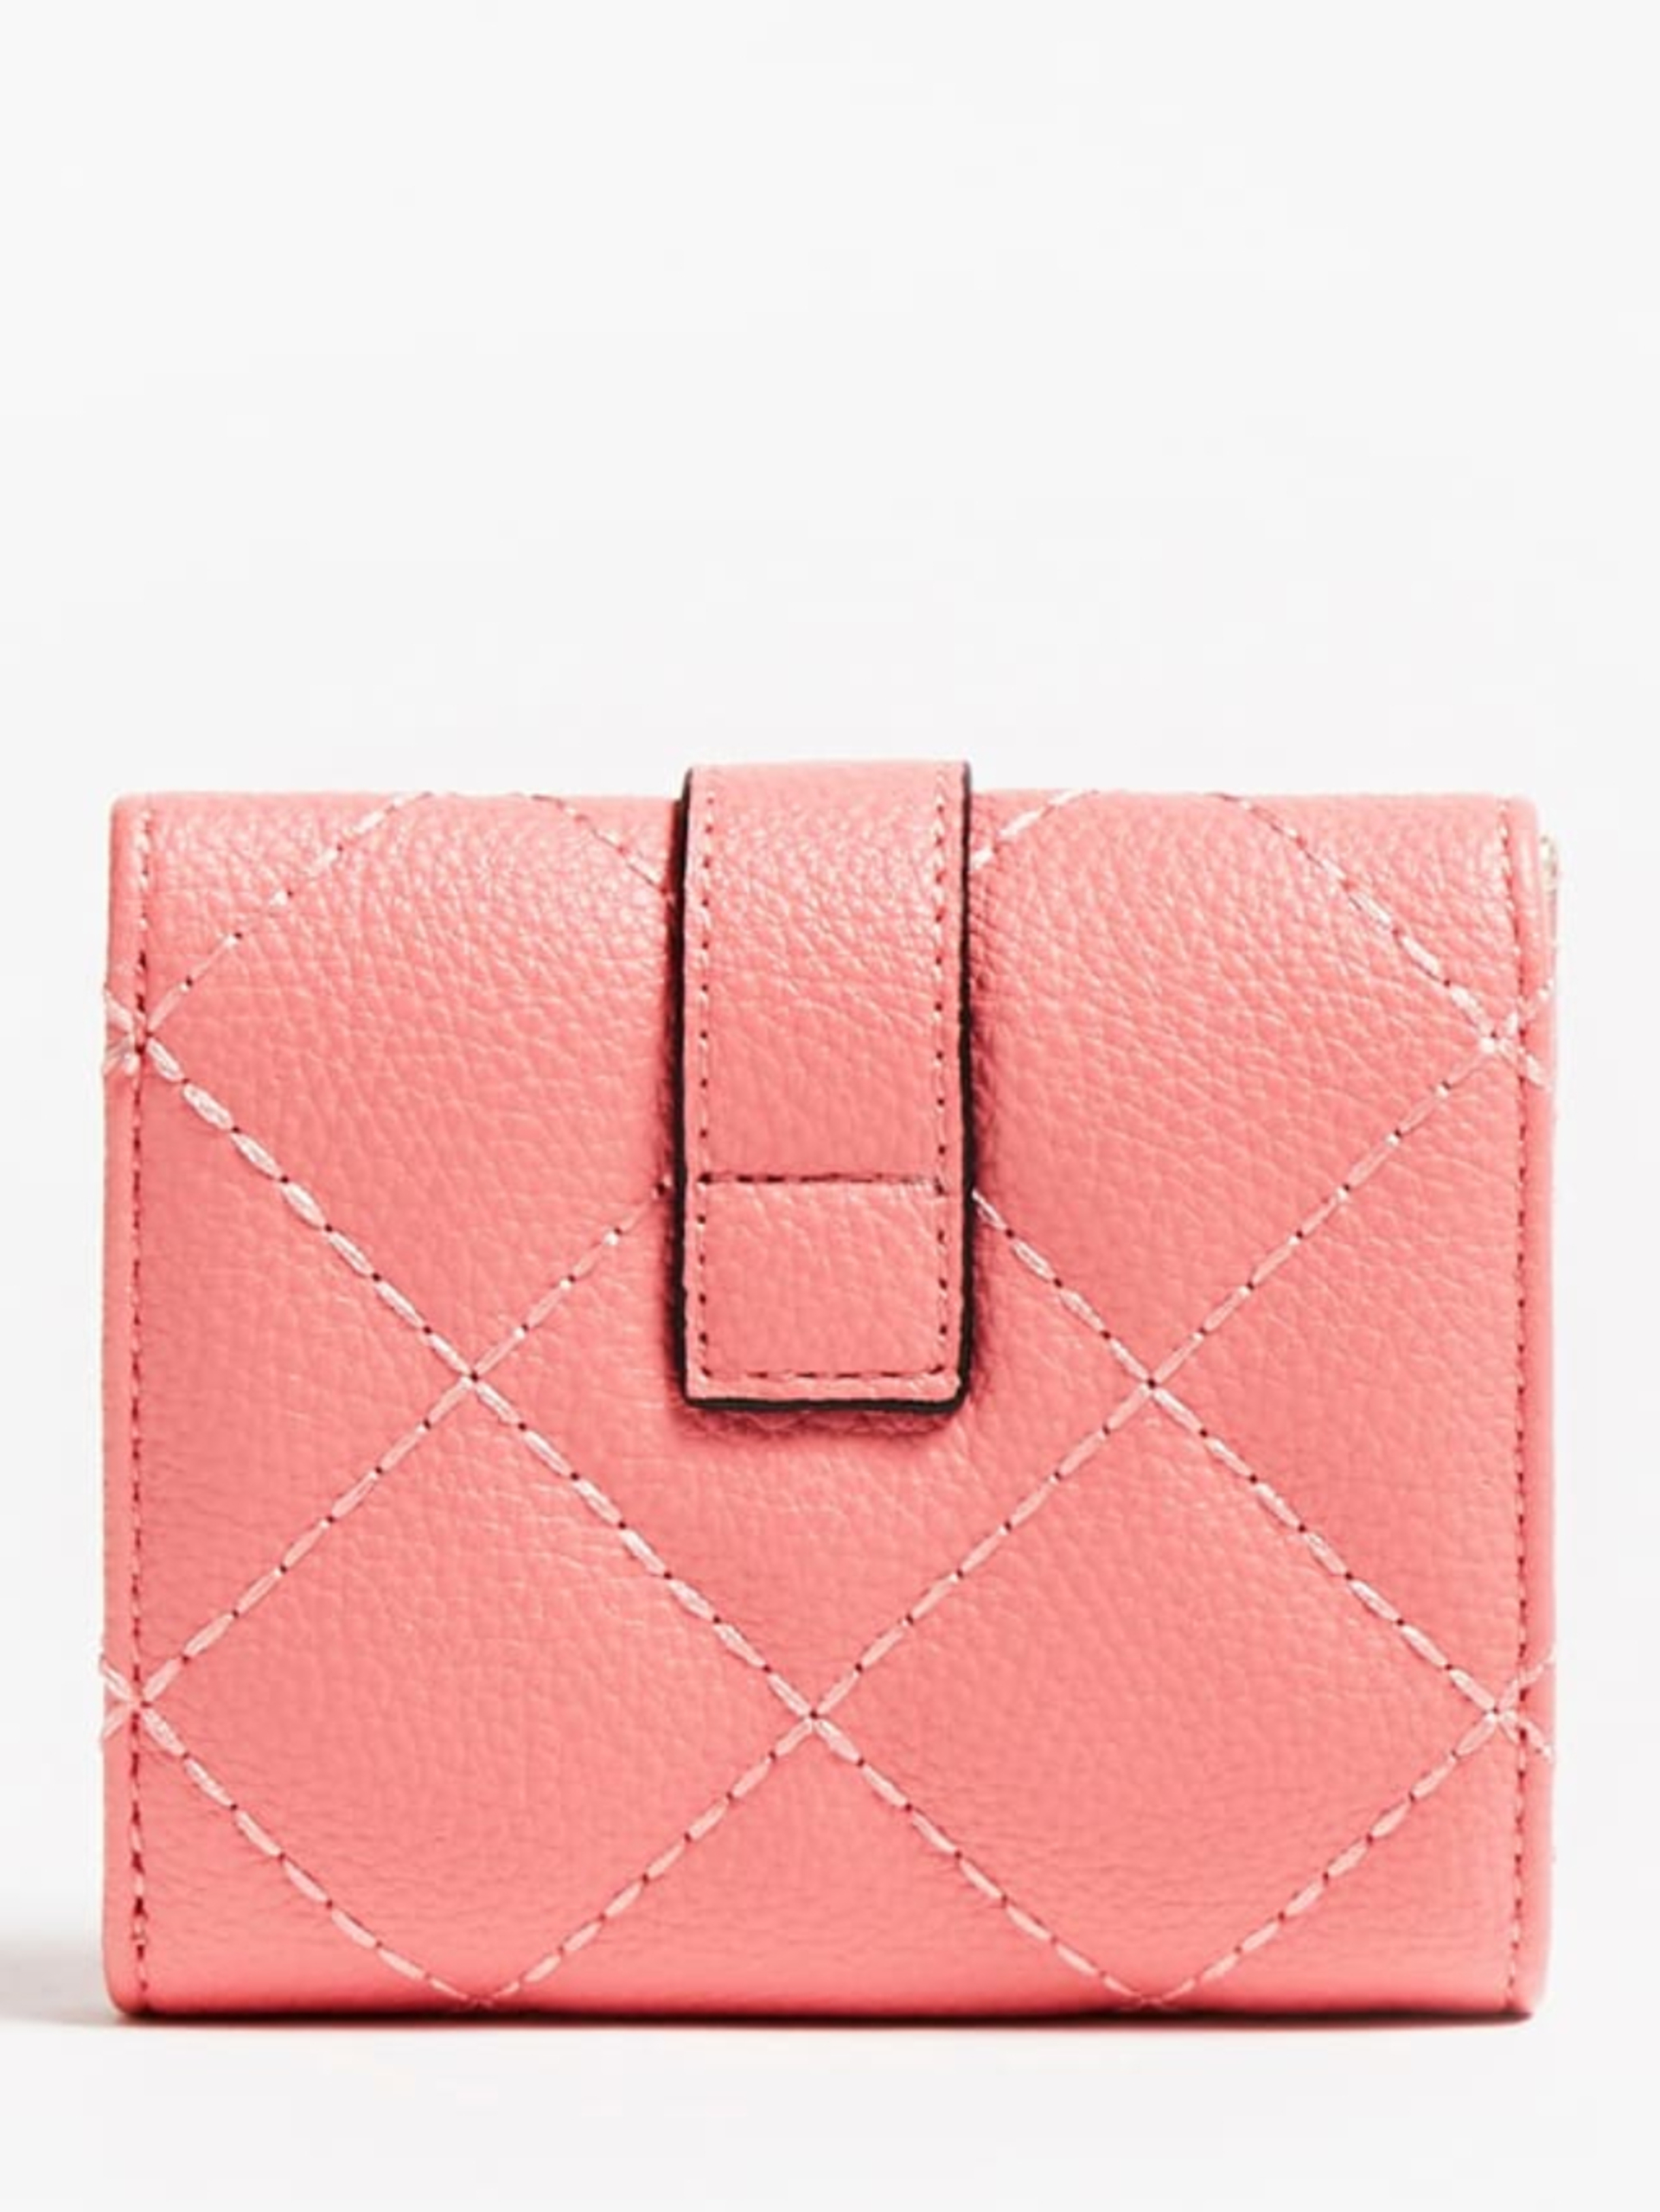 Guess dámská růžová peněženka - T/U (APR)